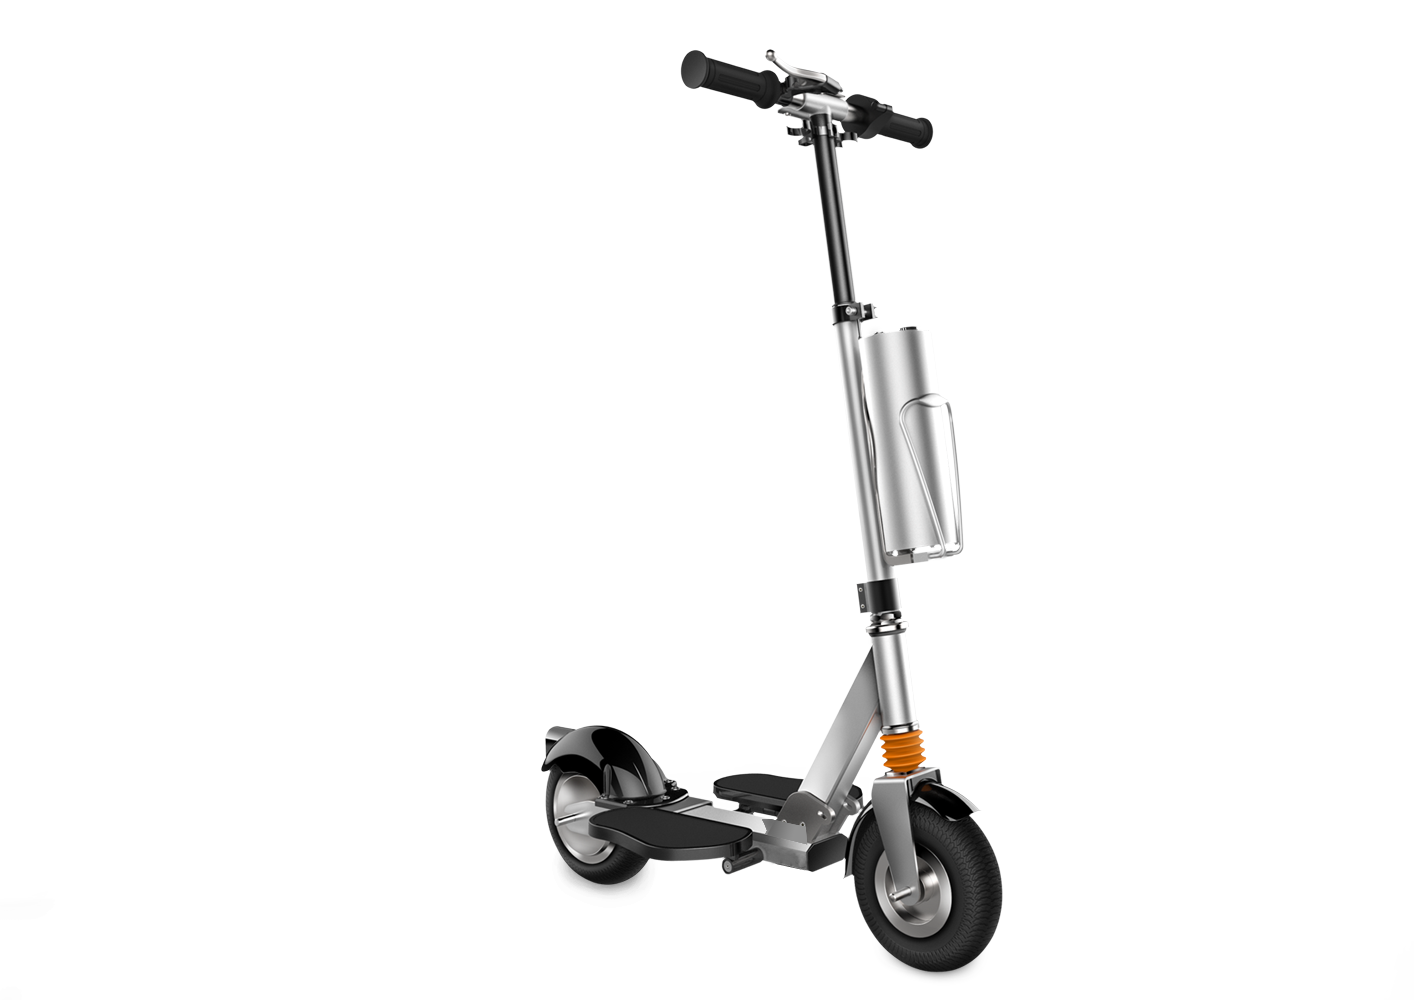 Fosjoas K2 electric scooter